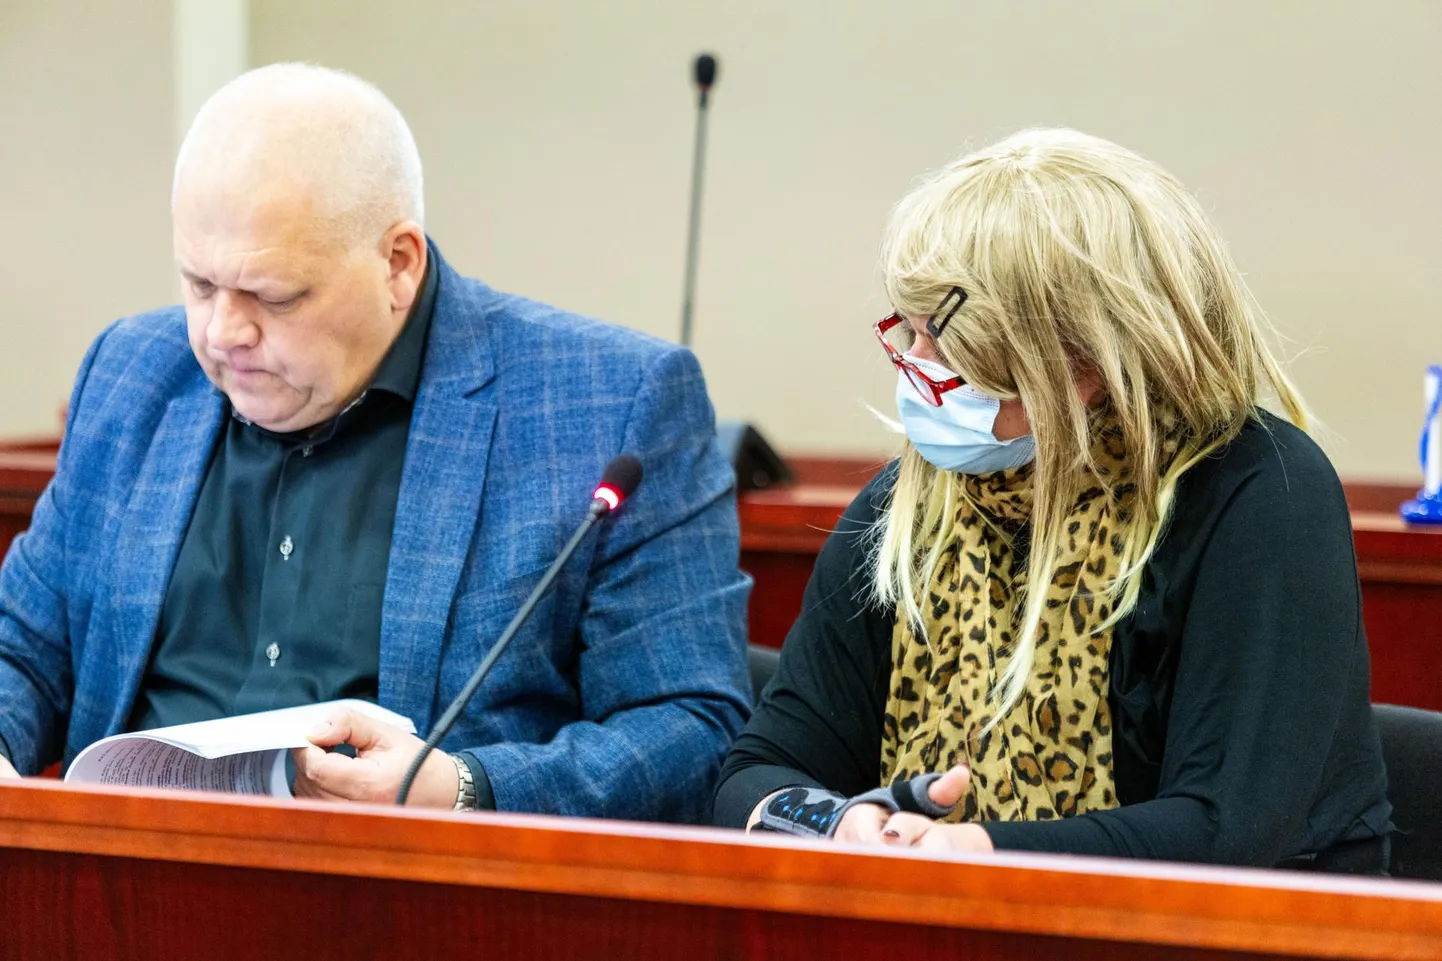 Моника Антон, хозяйка собак, жестоко напавших на соседку, появилась в зале суда в парике и защитной маске. По словам ее адвоката Андреса Вески, обвинение не обосновано.